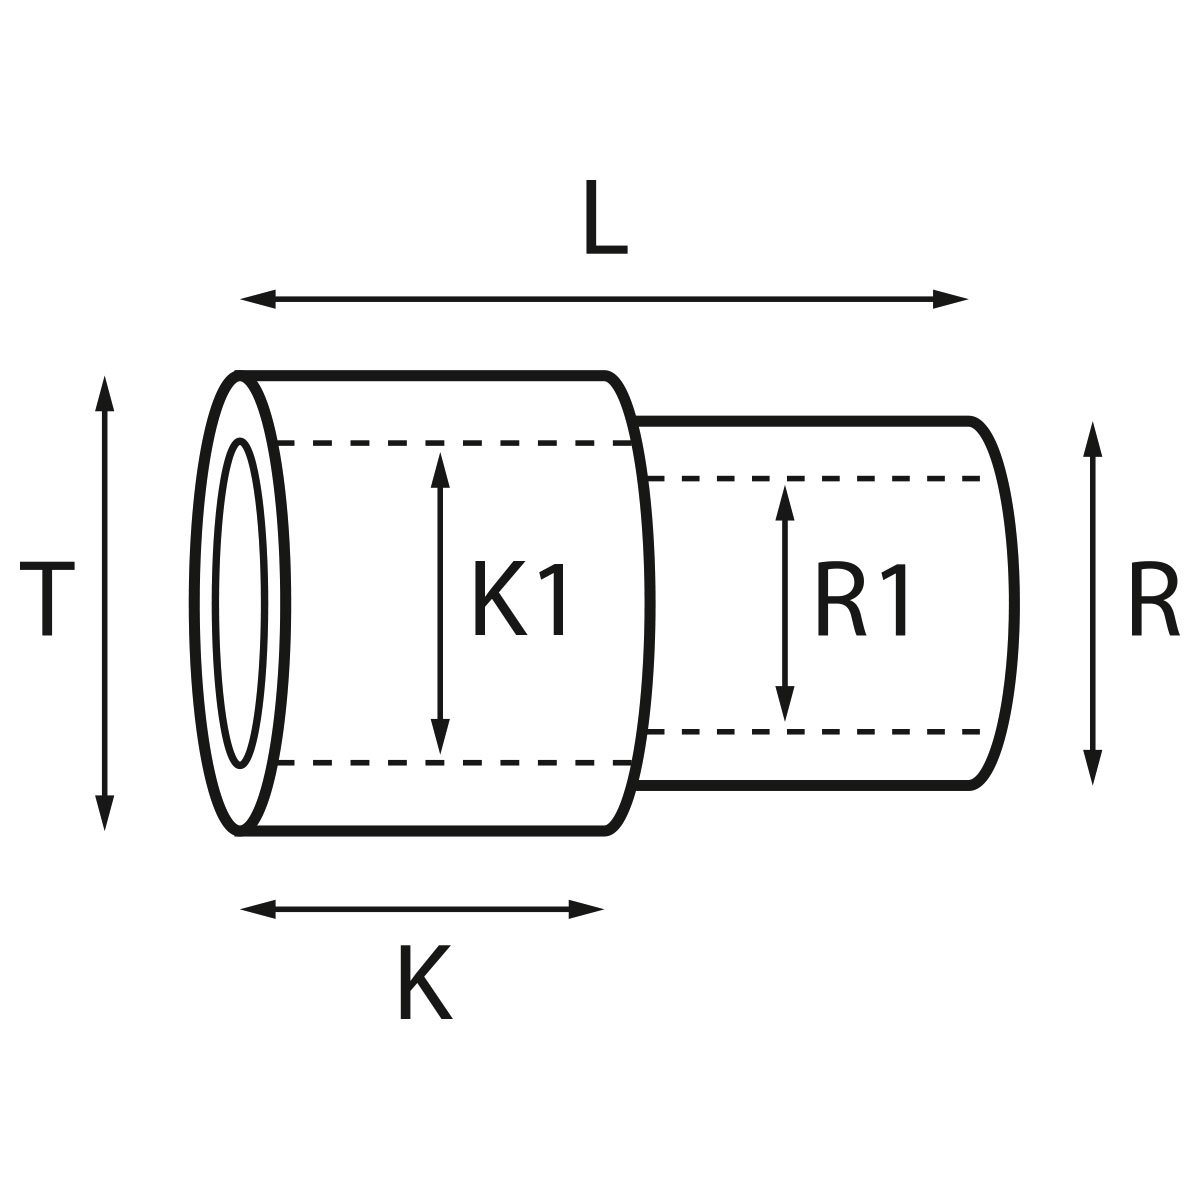 Gehäusetube Typ AS 13827, Tubus Ø 2,5 mm, Gesamtlänge 3,85 mm, für wasserdichte Kronen